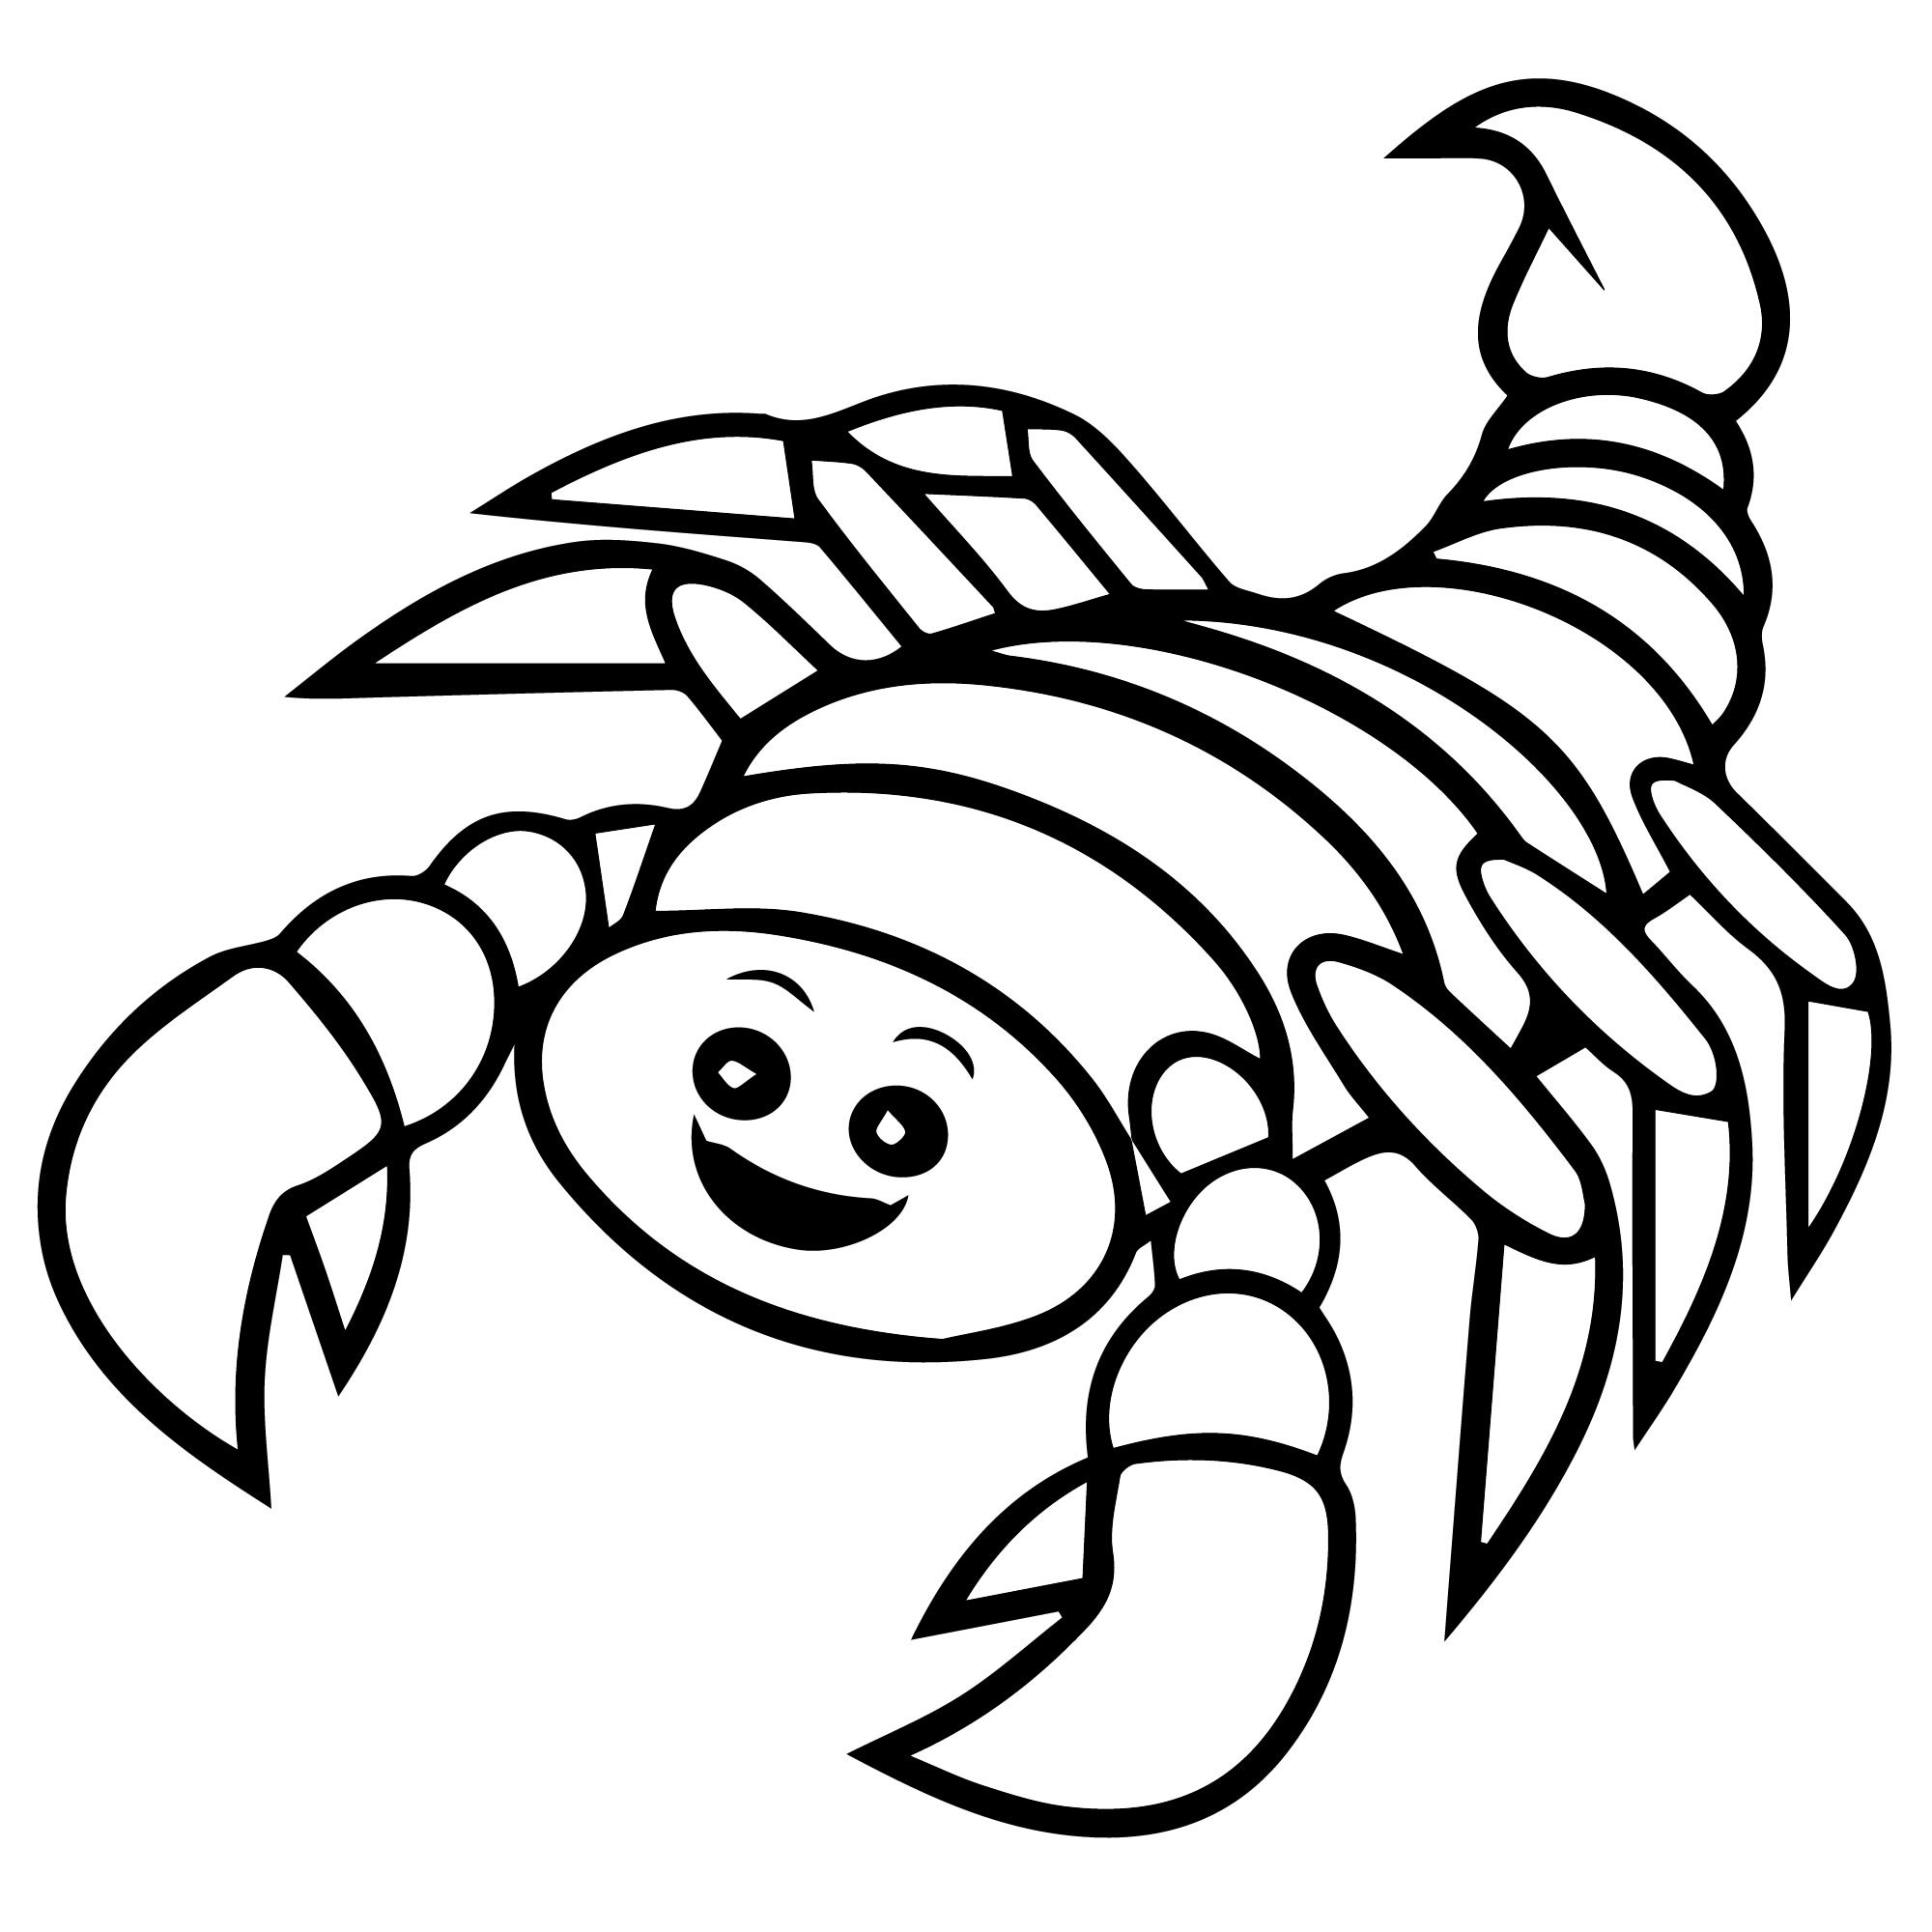 Скорпион раскраска для детей